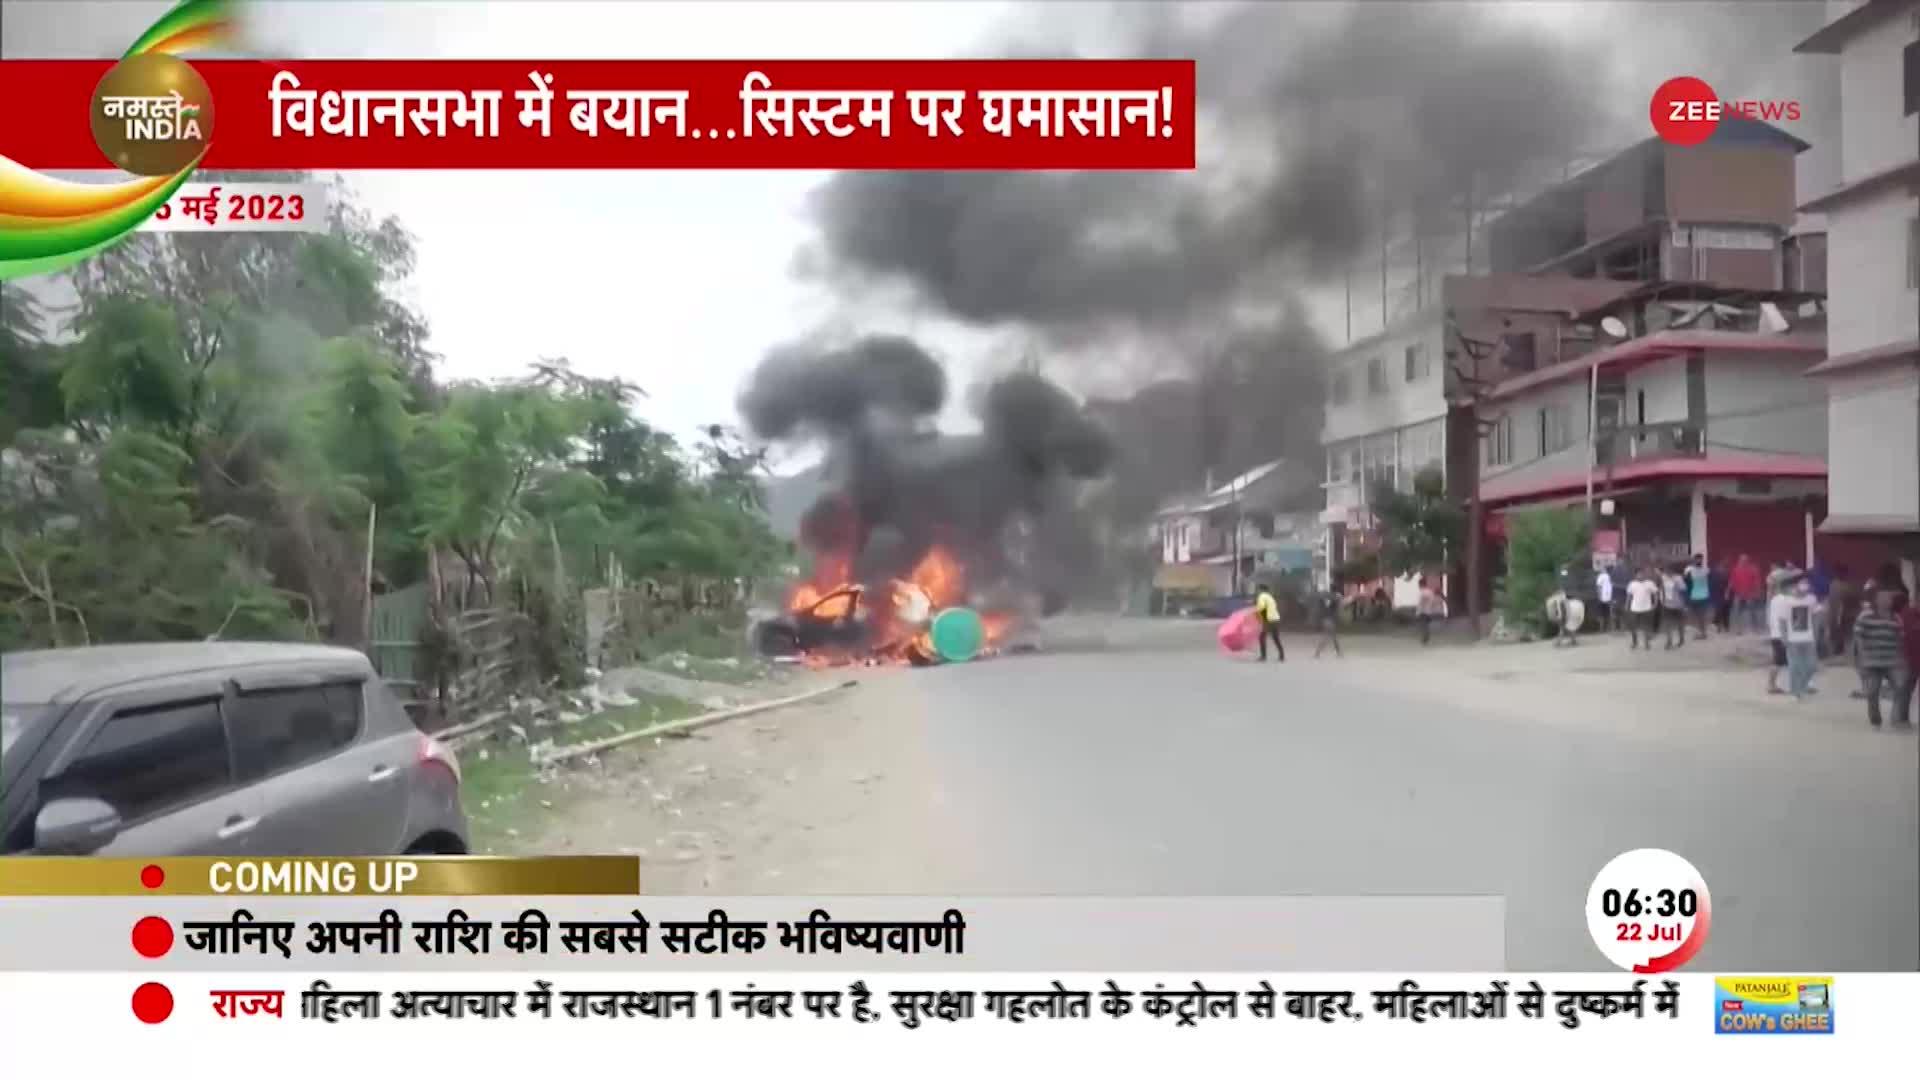 Manipur Violence: West Bengal में मणिपुर जैसी घटना, बीजेपी उम्मीदवार के साथ अभद्रता का आरोप